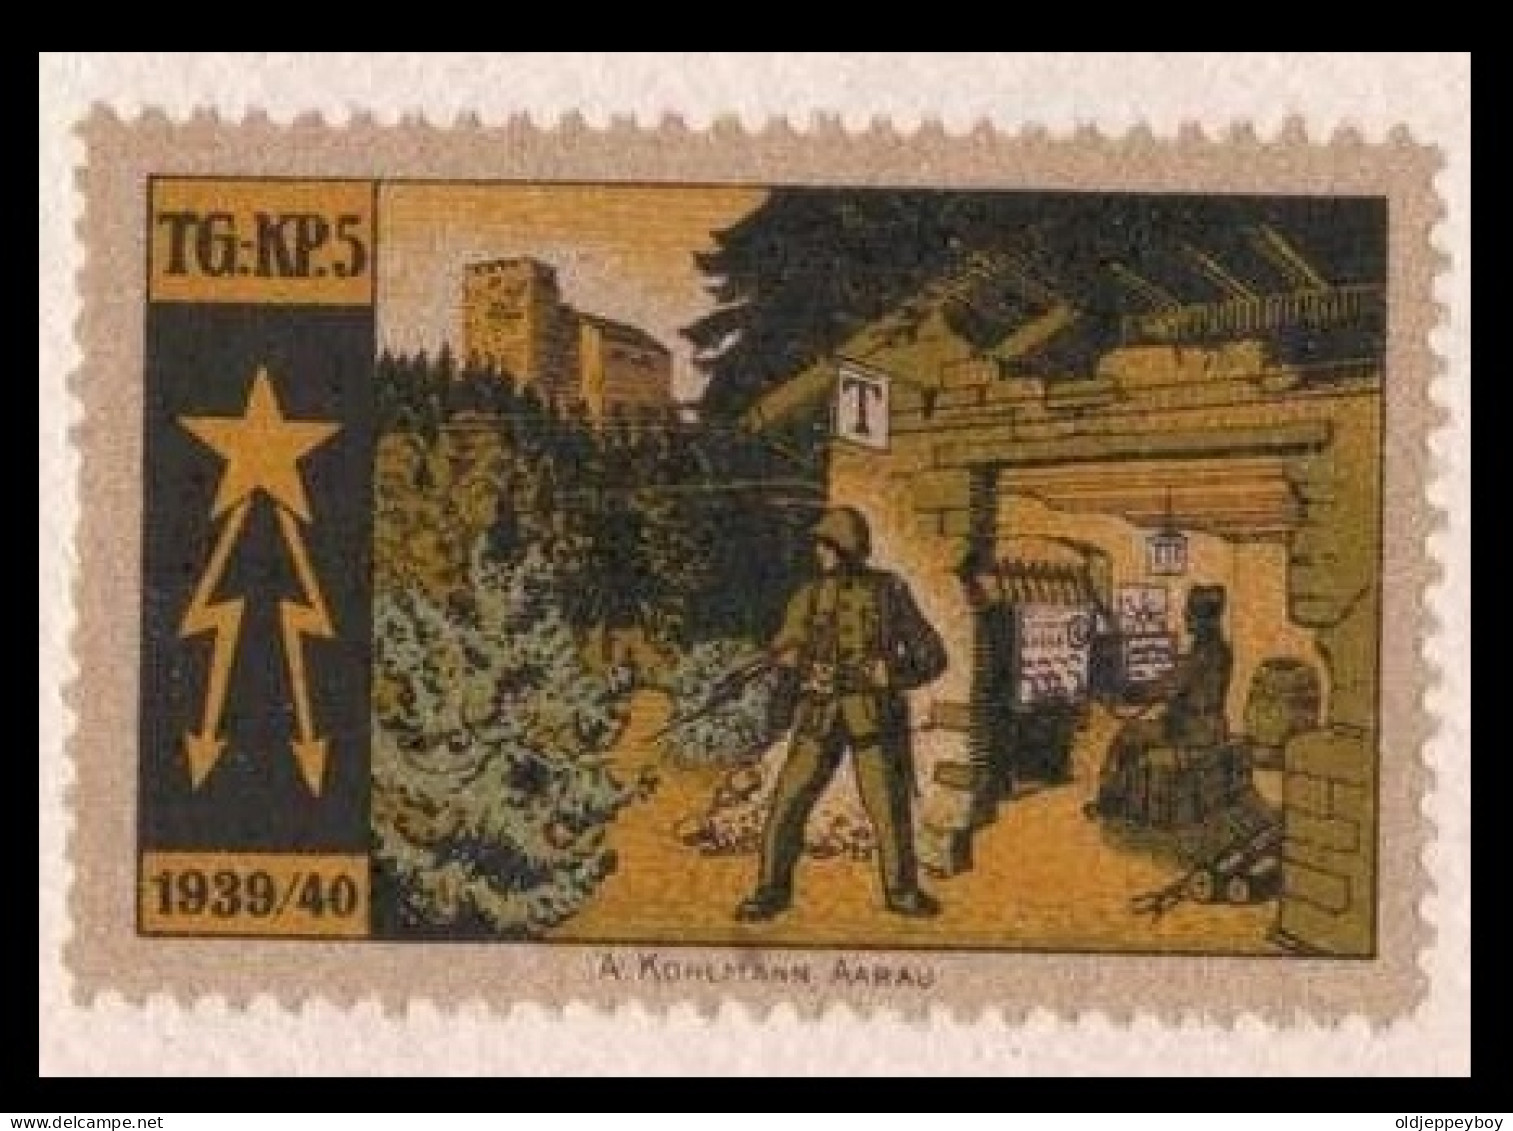 Suisse /Schweiz/Switzerland // Vignette /Schweiz Soldatenmarken 1939-45: Telegraphen-Pioniere TG KP 5 Nr. 12 - Vignettes